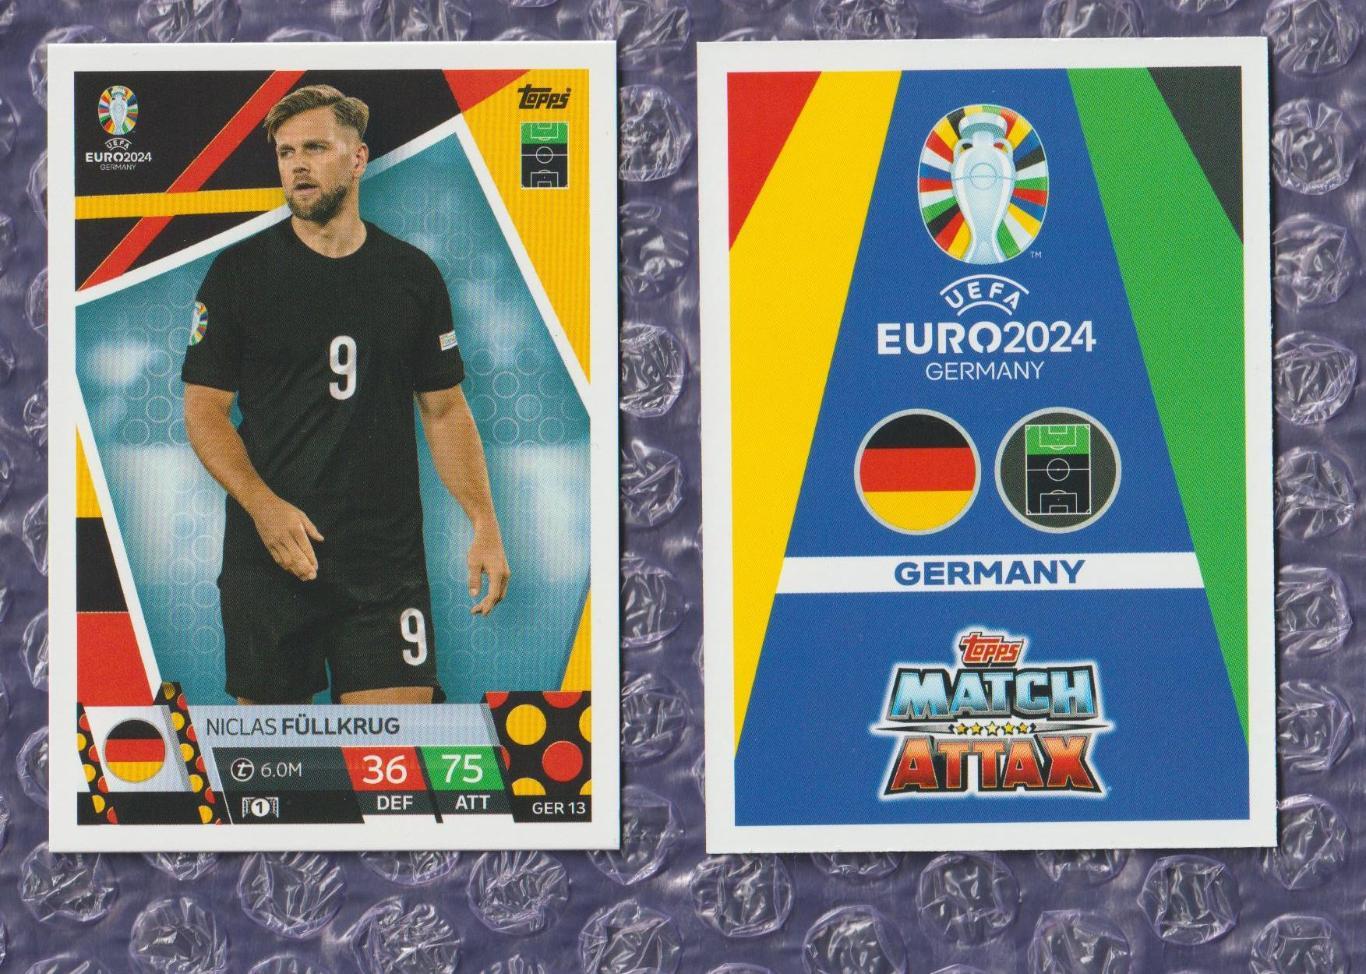 EURO-2024 / Germany - Niclas Fullkrug